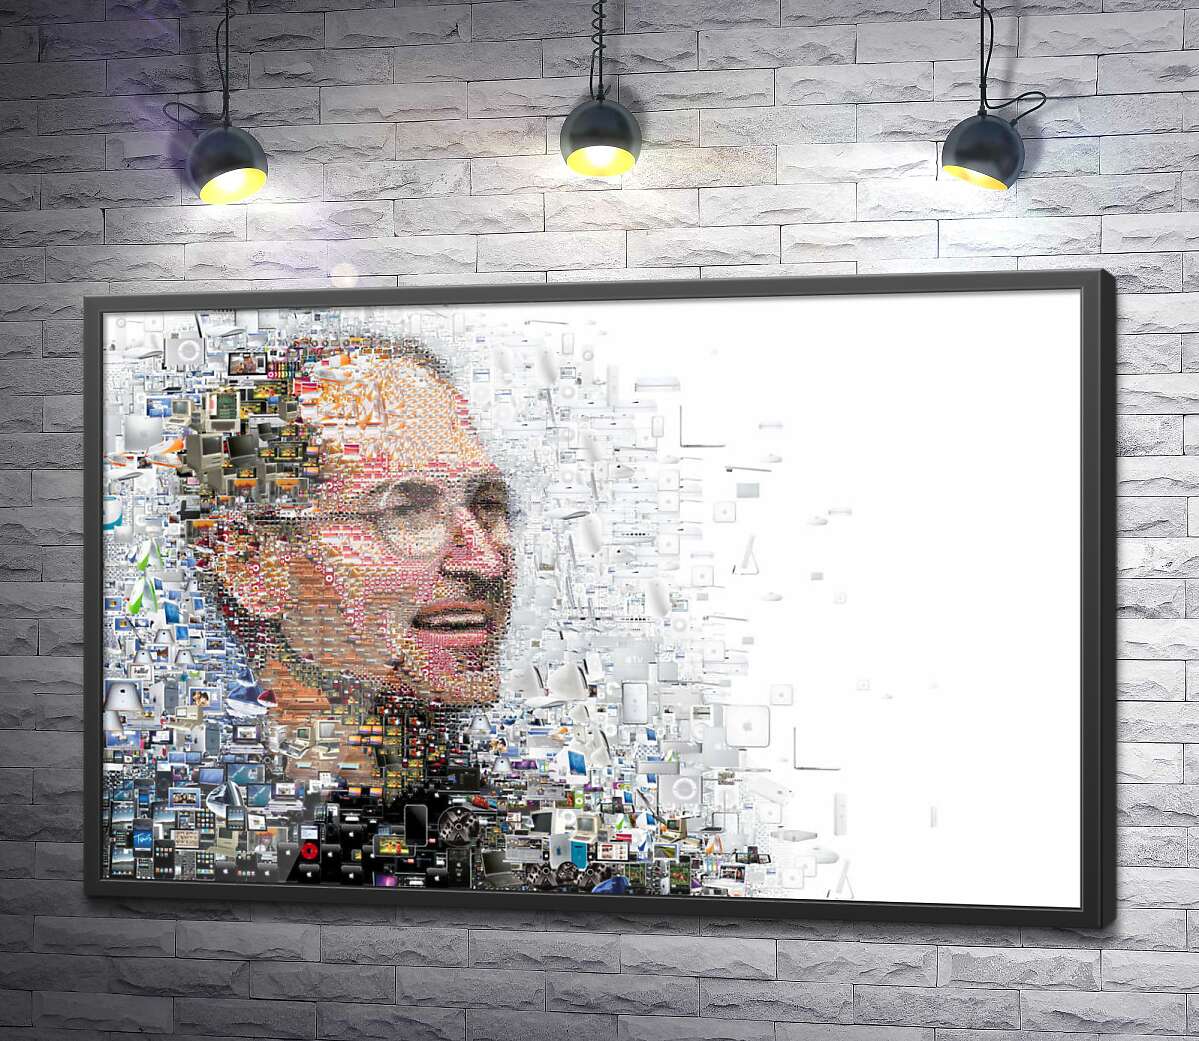 постер Стив Джобс (Steve Jobs) из тысячей изображений гаджетов